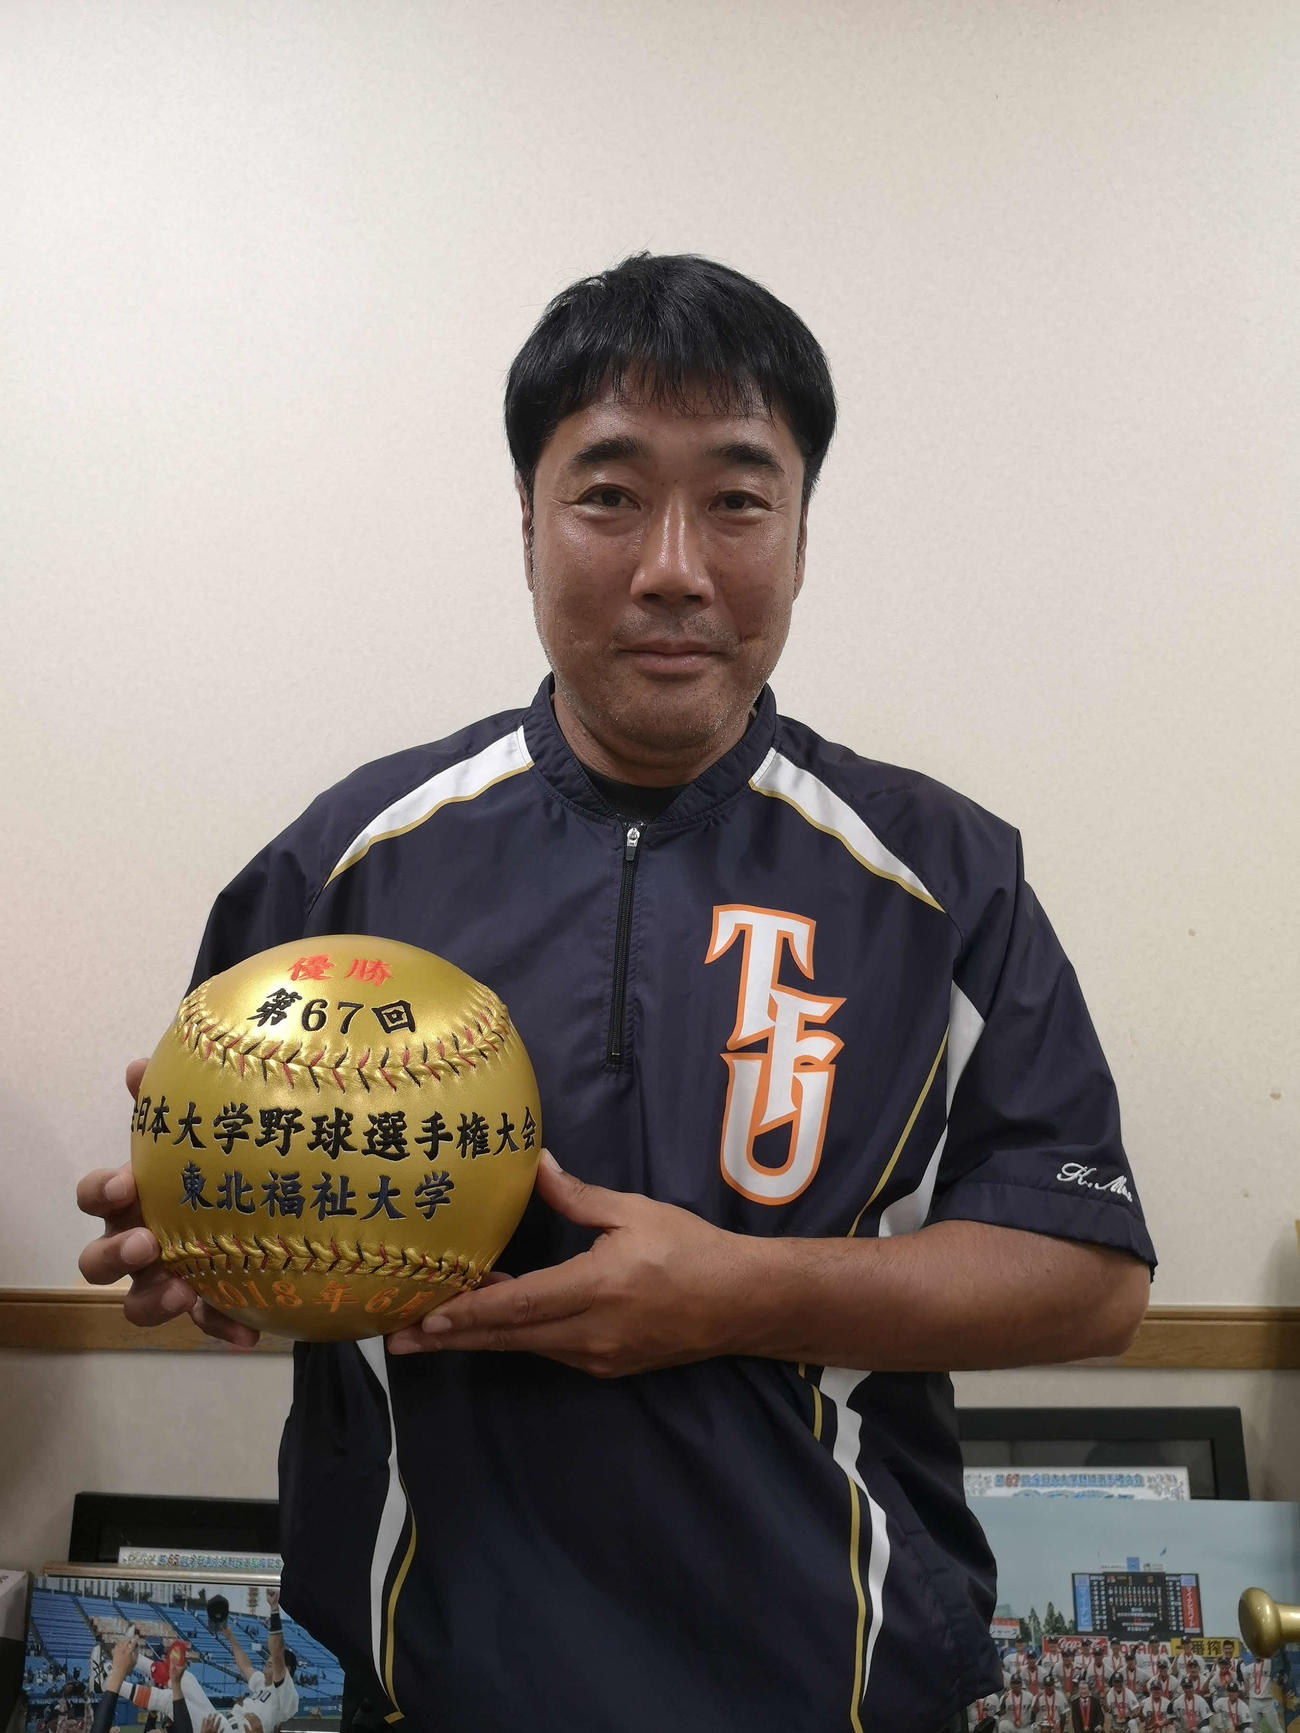 東北福祉大・大塚光二監督は「これが最後、中野が捕ったウイニングボールです」と冗談を言いながら日本一記念のボールを持つ